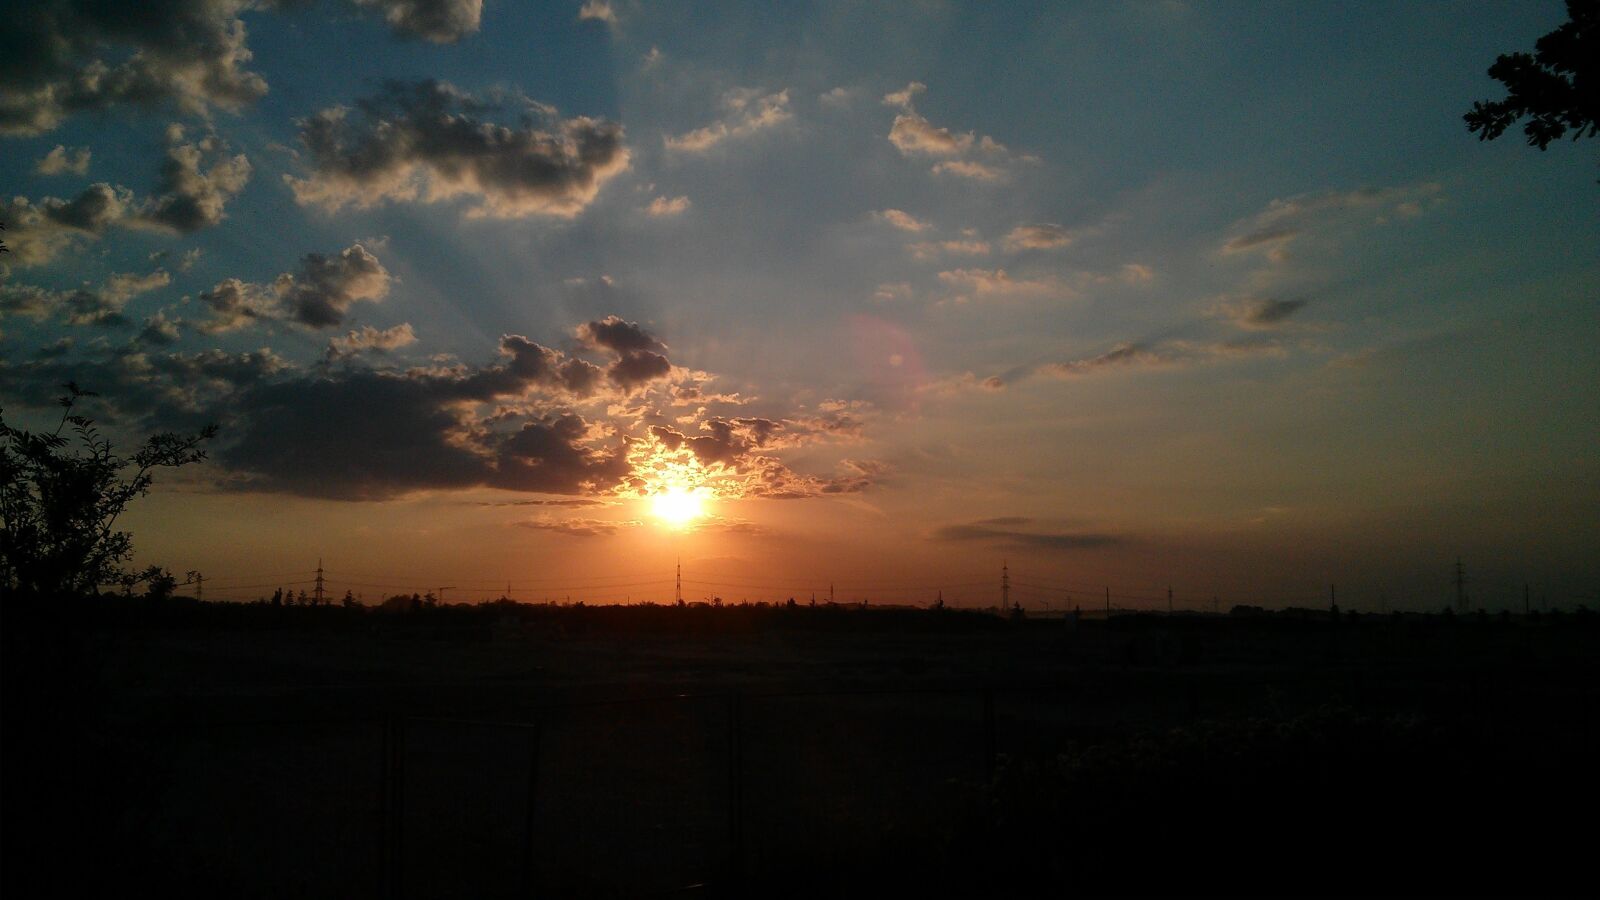 LG Nexus 4 sample photo. Sunset, dawn, sun photography